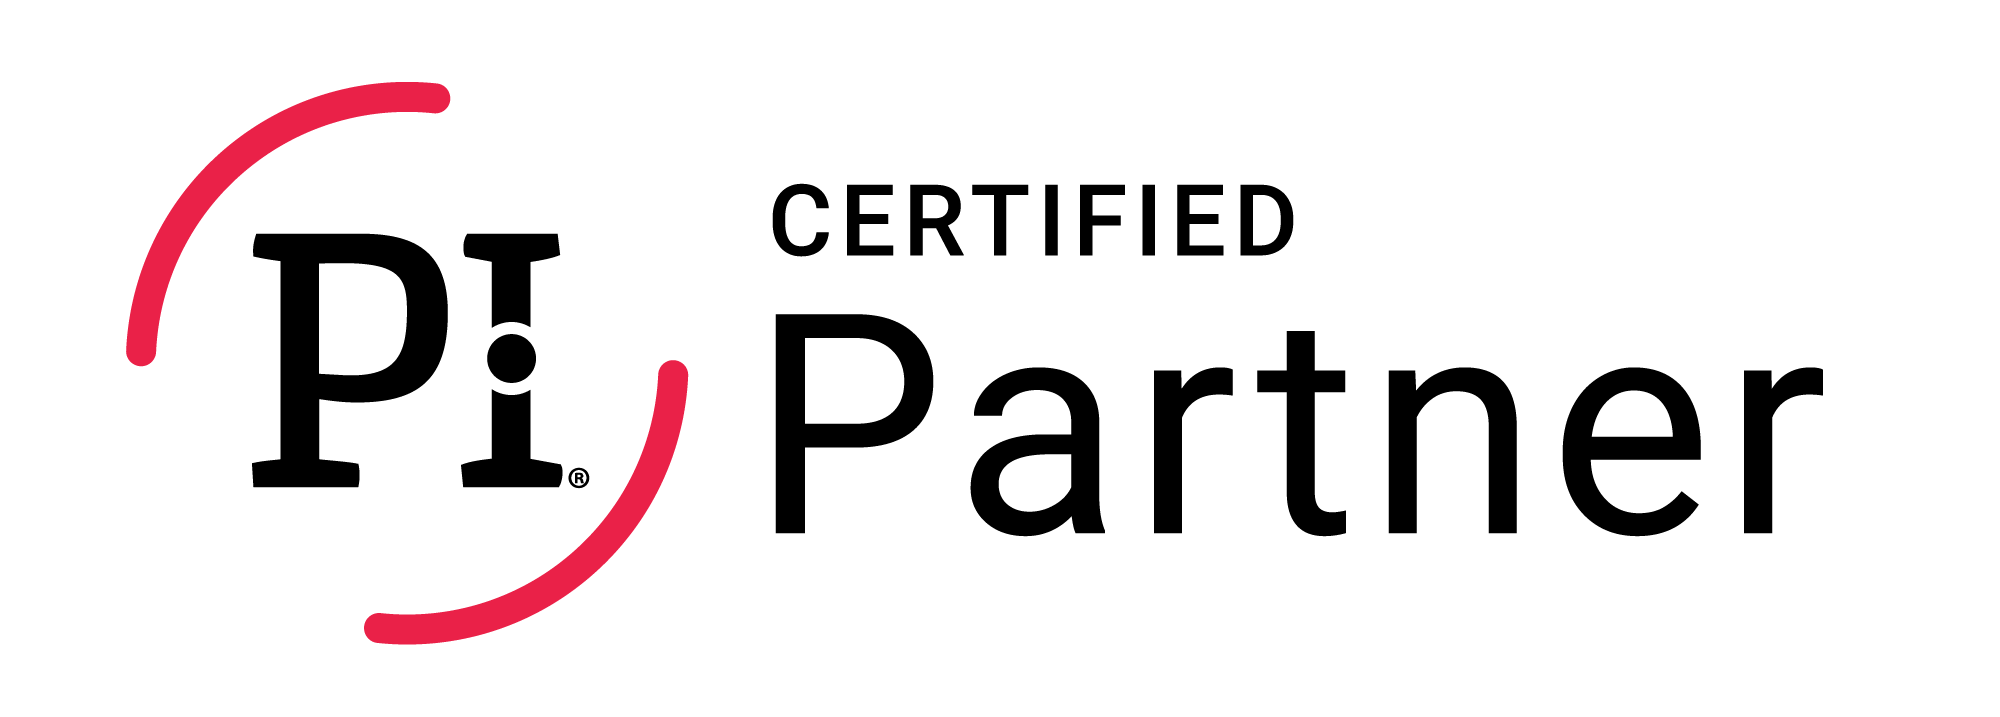 Logo partenaire certifié